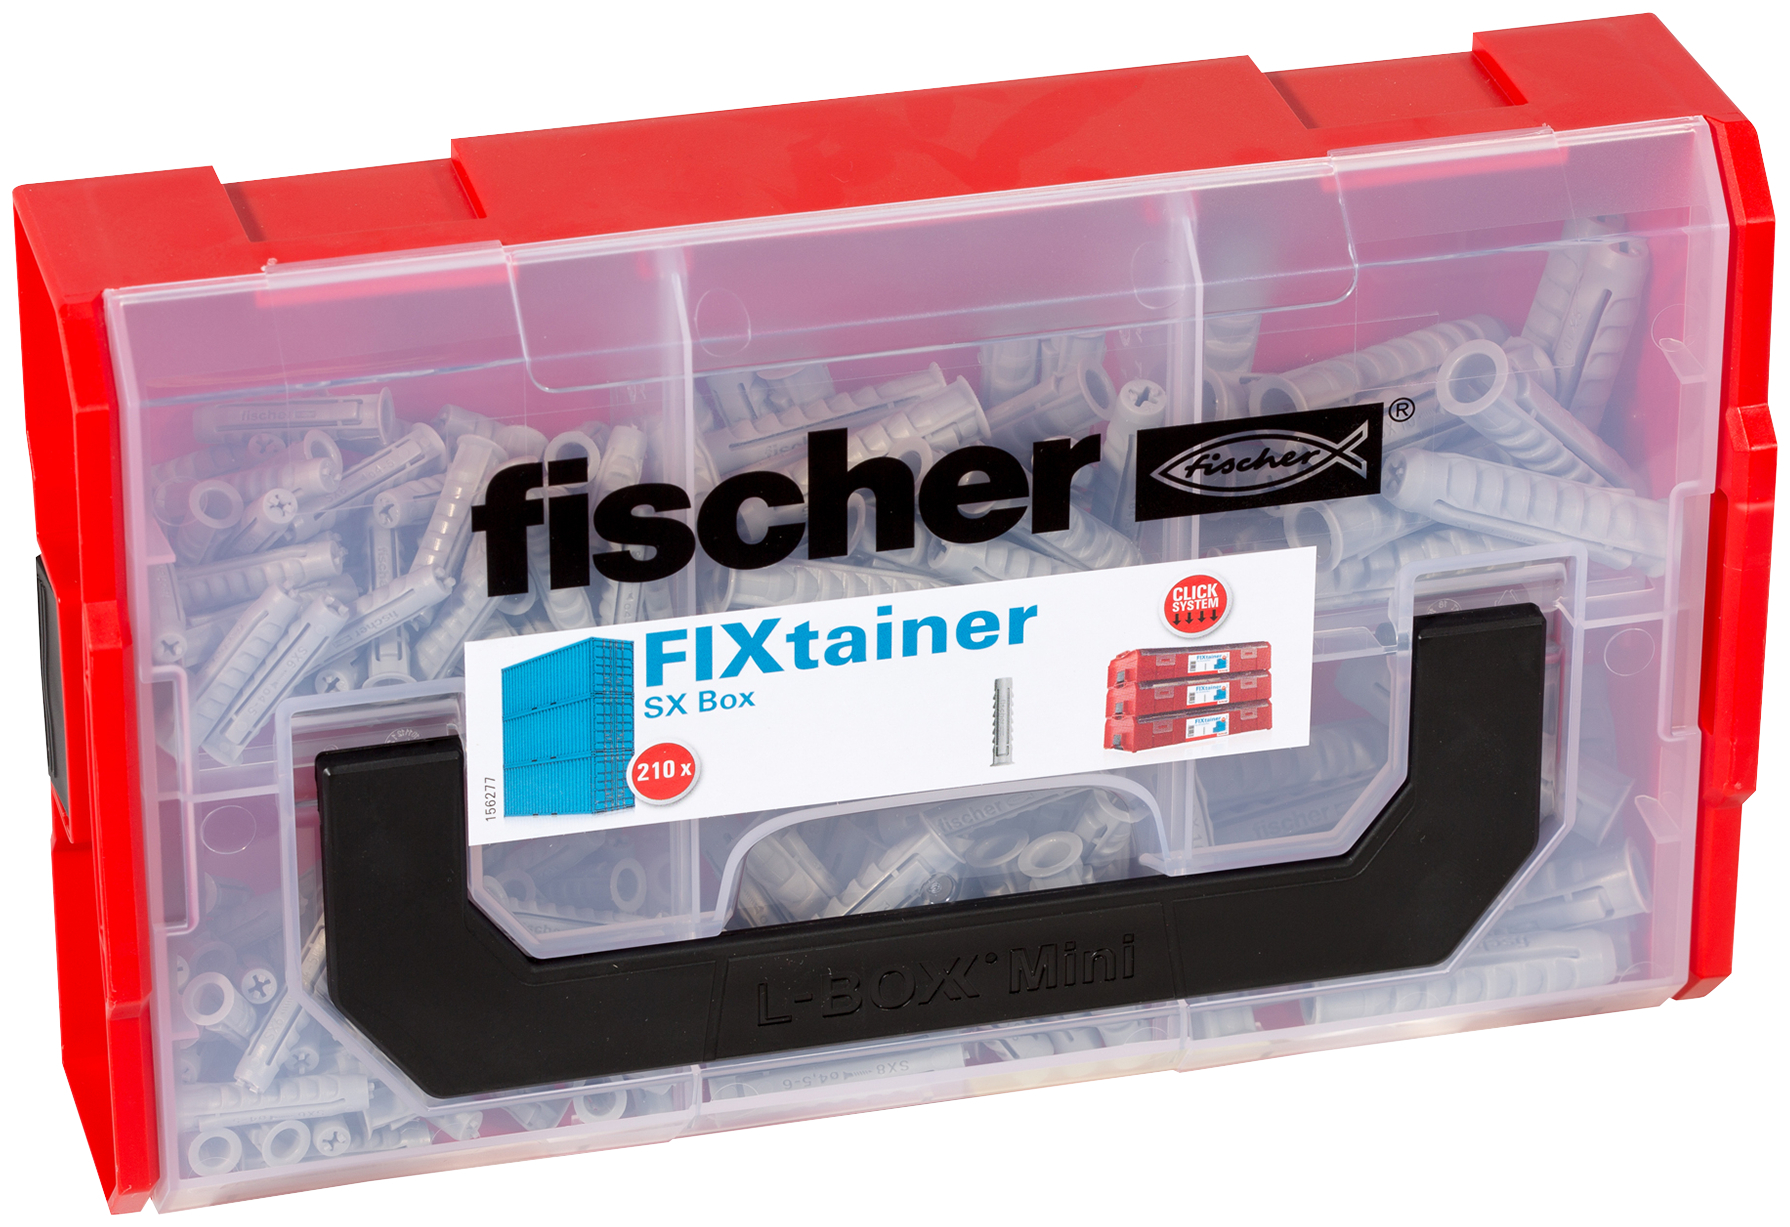 fischer FIXtainer SX Valigetta tasselli (210 Pz.) Pratiche soluzioni di fissaggio per le pi comuni applicazioni nel fischer FixTainer impilabile e di alta qualit.